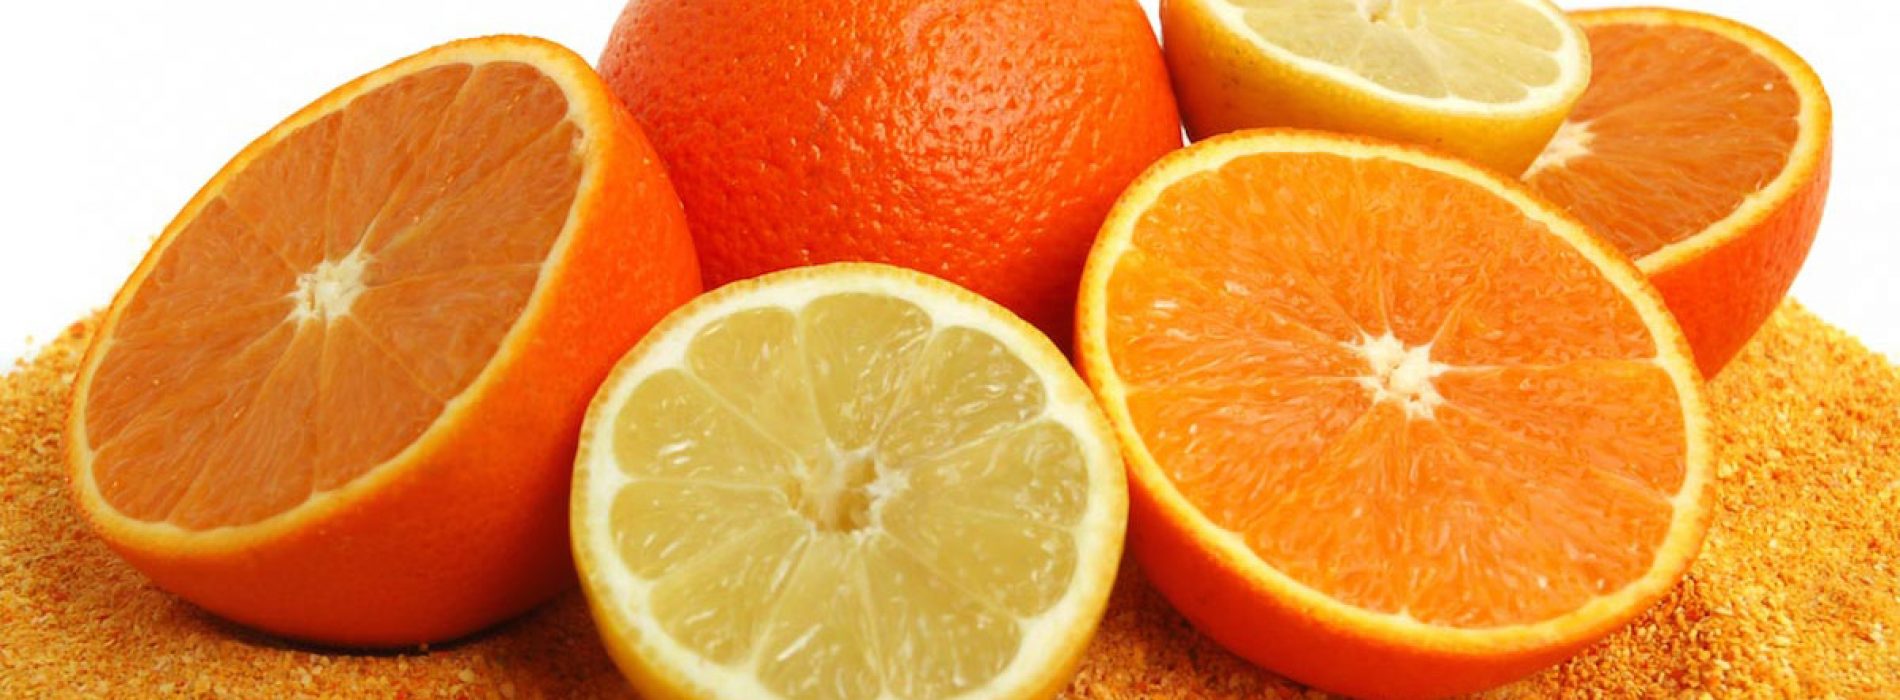 6 Vitamine C-mythen ONTKRACHT: Dit is waarom de voedingsstof effectief, niet giftig en veilig is